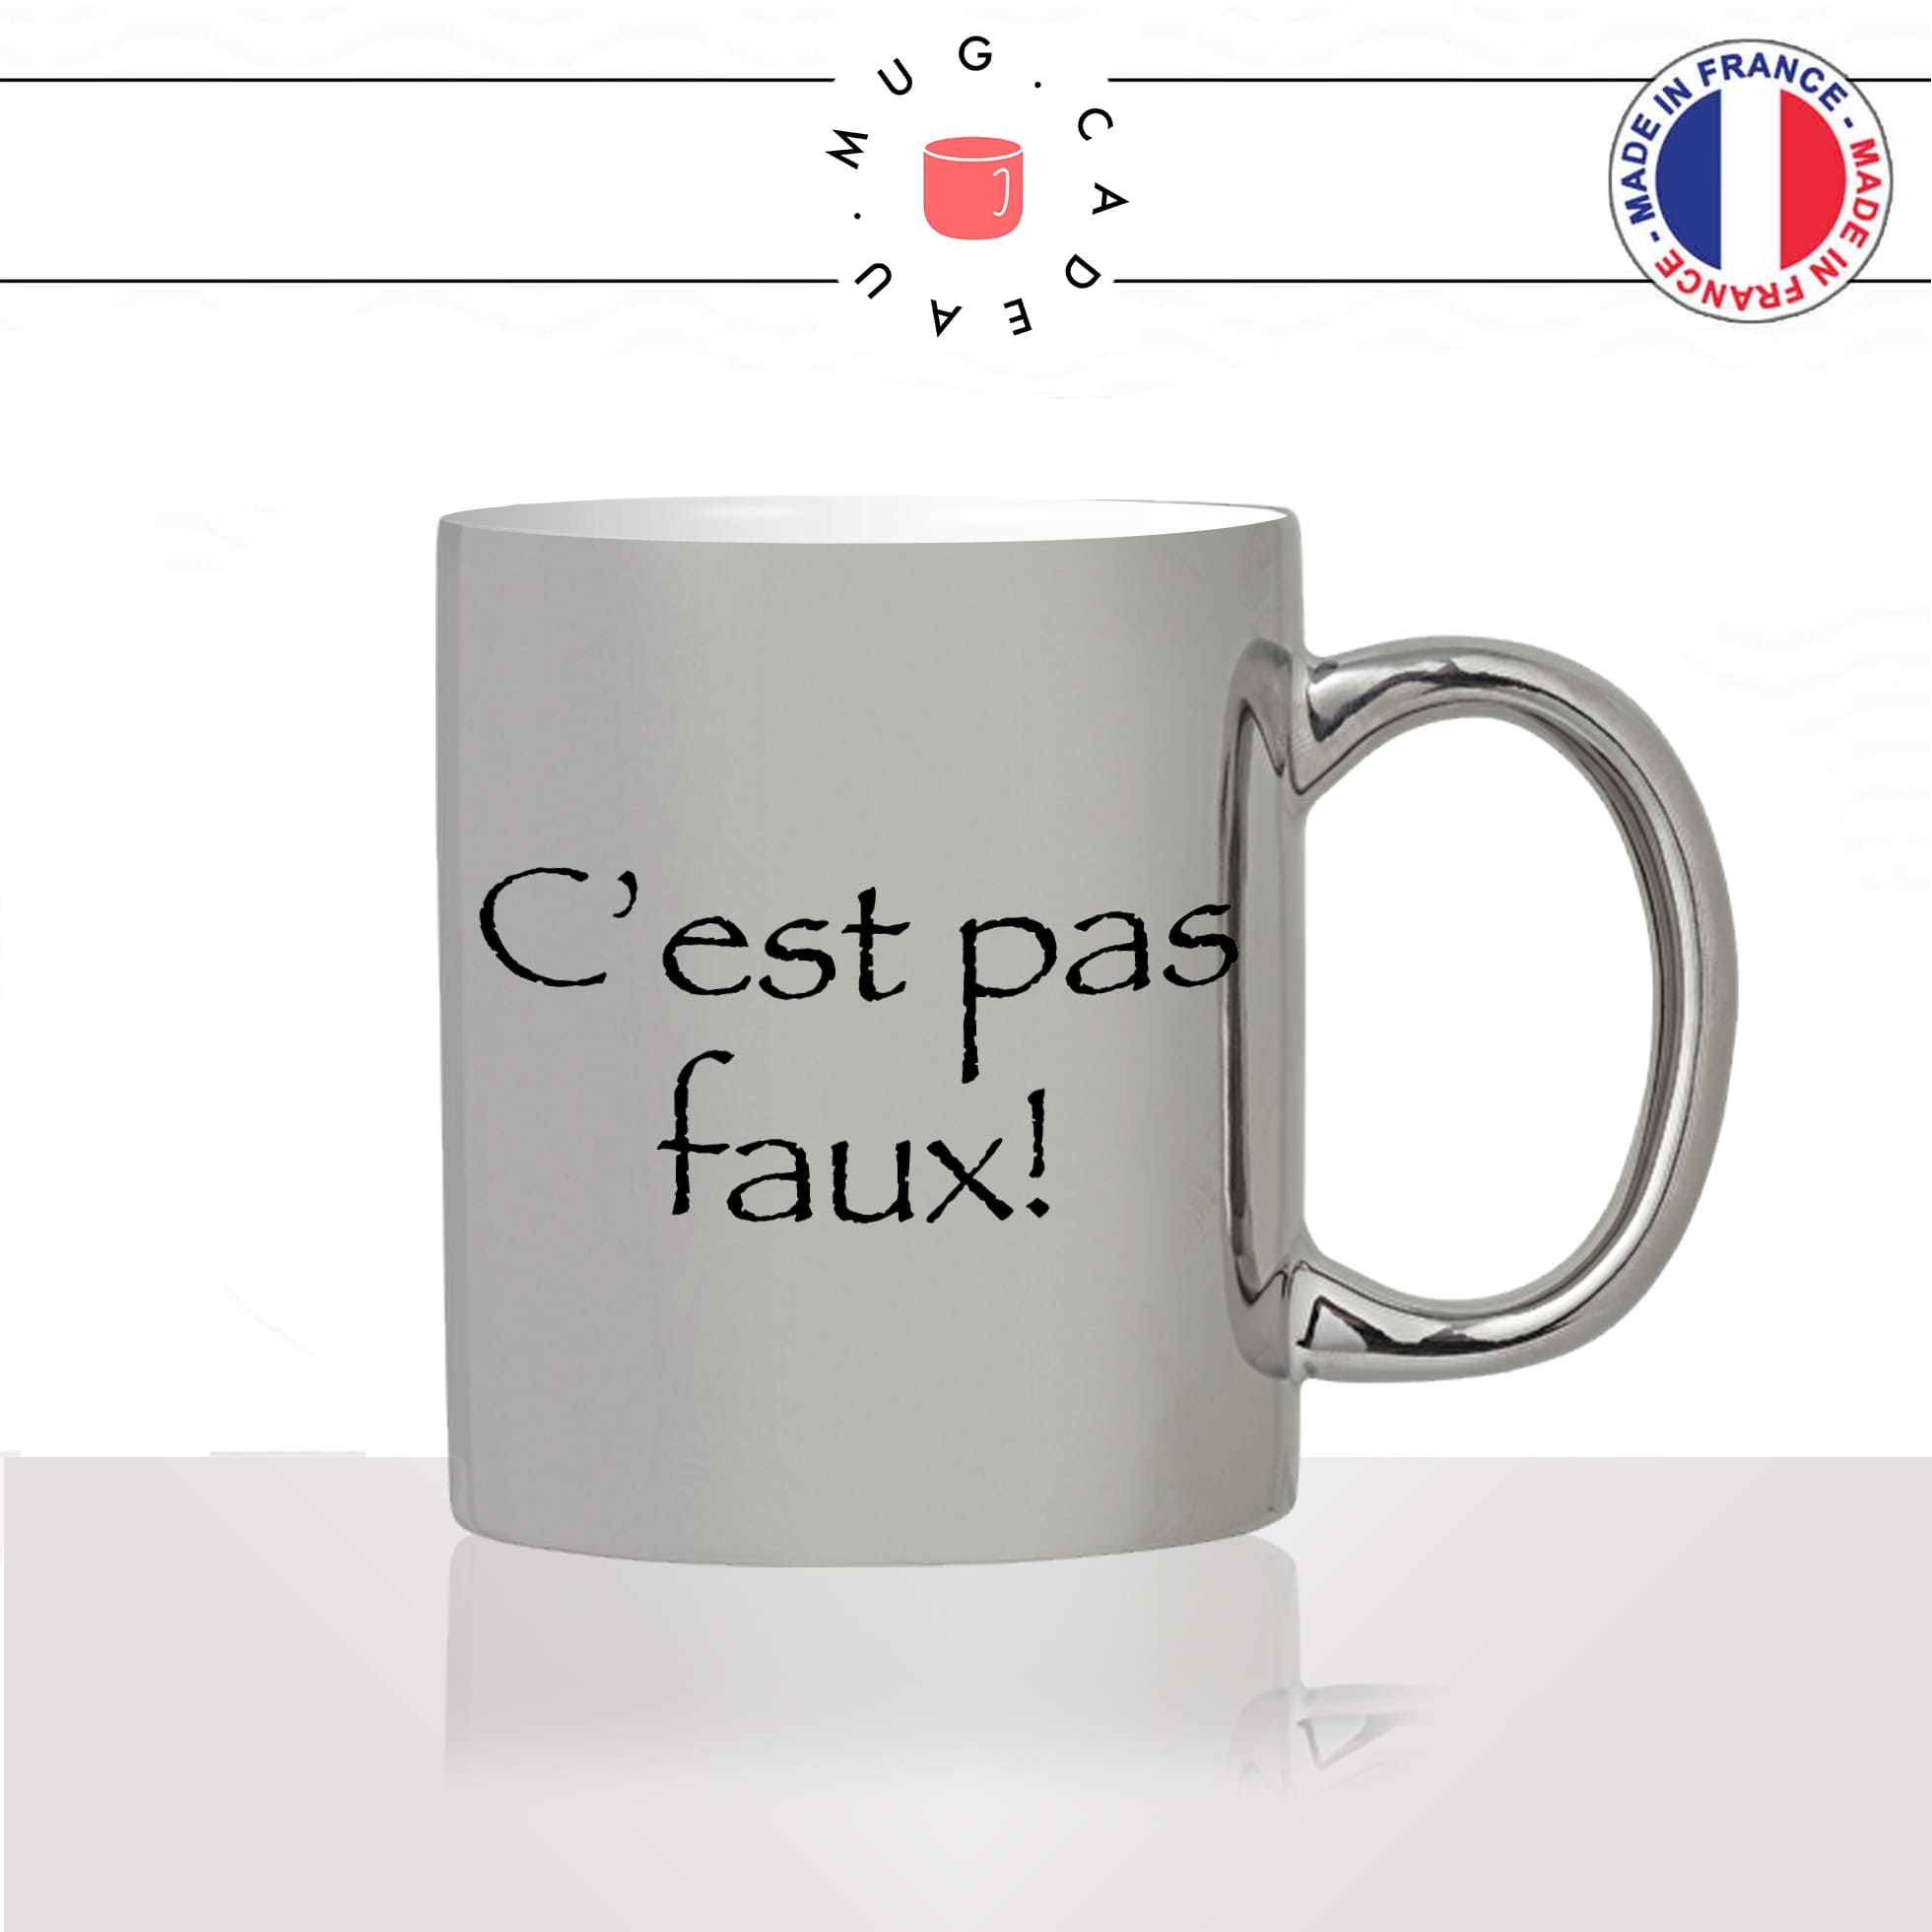 mug-tasse-argent-argenté-silver-série-francaise-kaamelott-arthur-cest-pas-faux-caradoc-perceval-humour-idée-cadeau-fun-cool-café-thé2